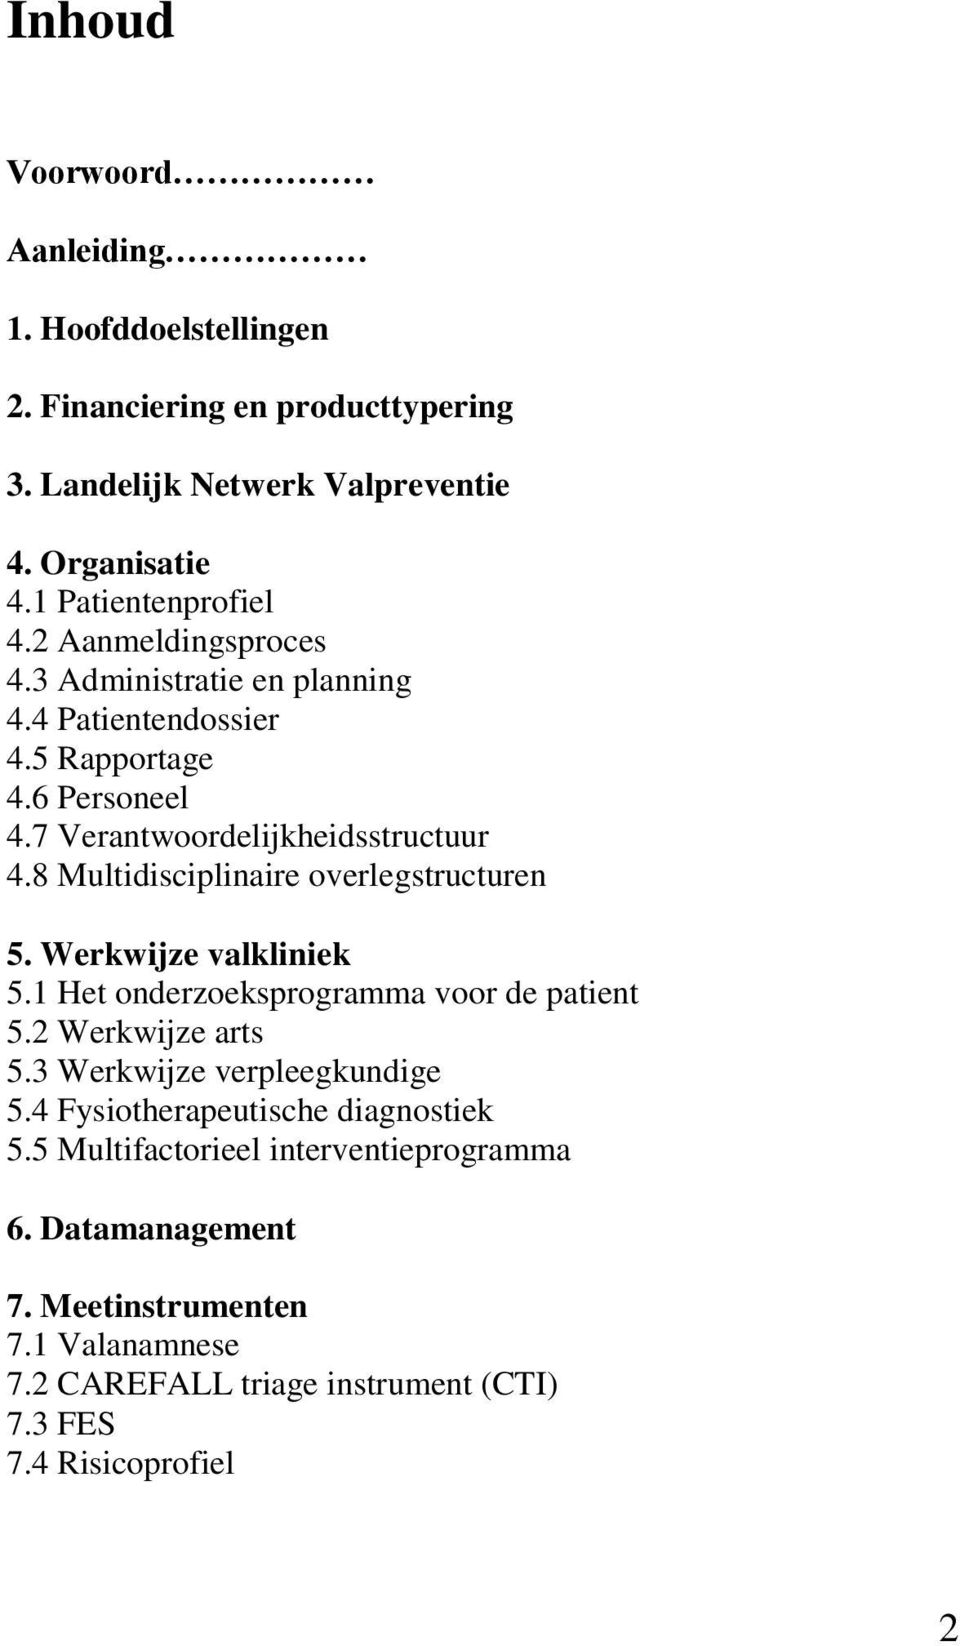 8 Multidisciplinaire overlegstructuren 5. Werkwijze valkliniek 5.1 Het onderzoeksprogramma voor de patient 5.2 Werkwijze arts 5.3 Werkwijze verpleegkundige 5.